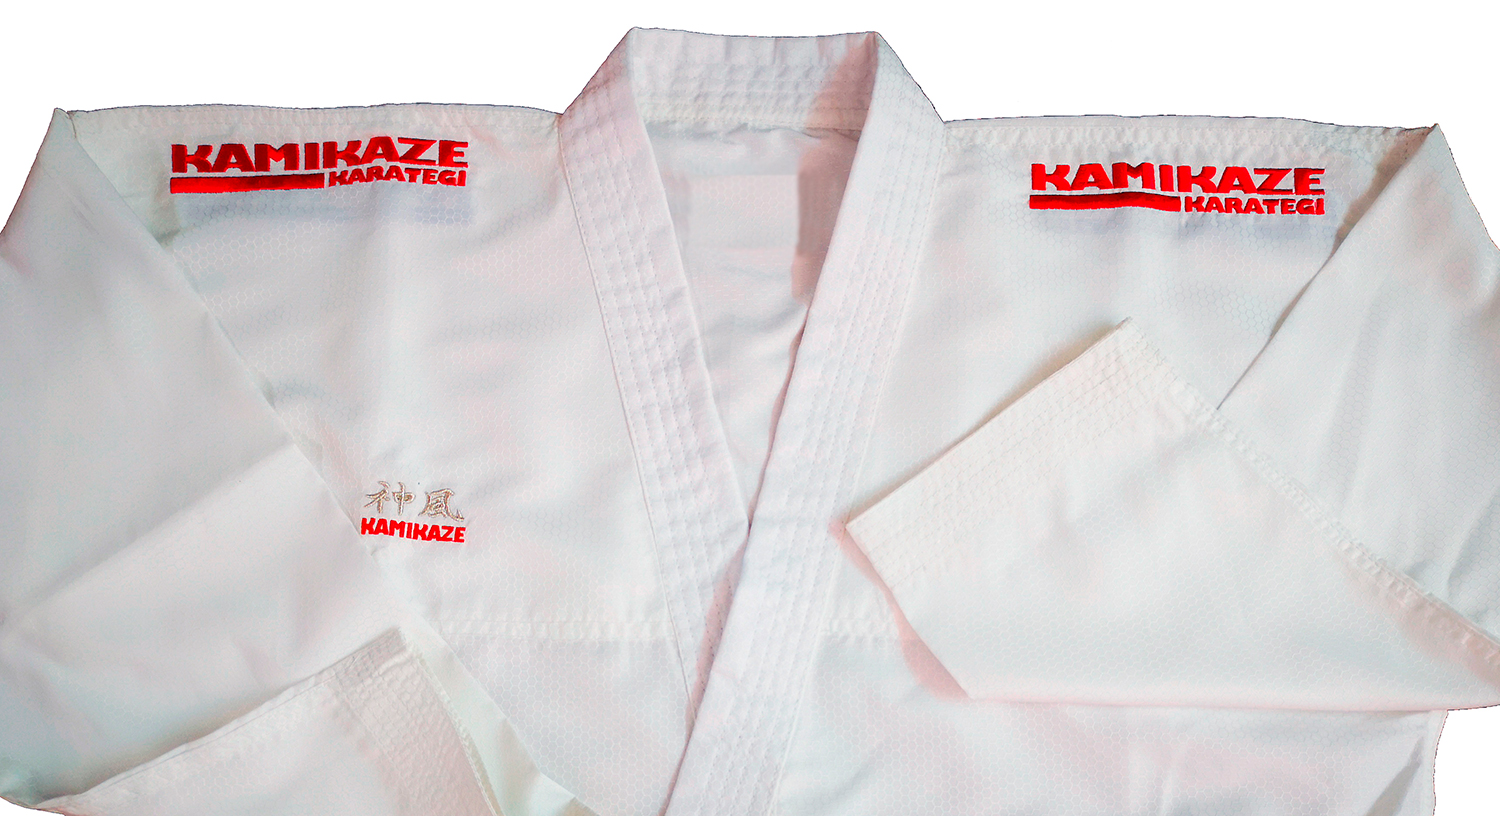 Logo Kamikaze Karategi brodé en ROUGE sur les deuz épaules